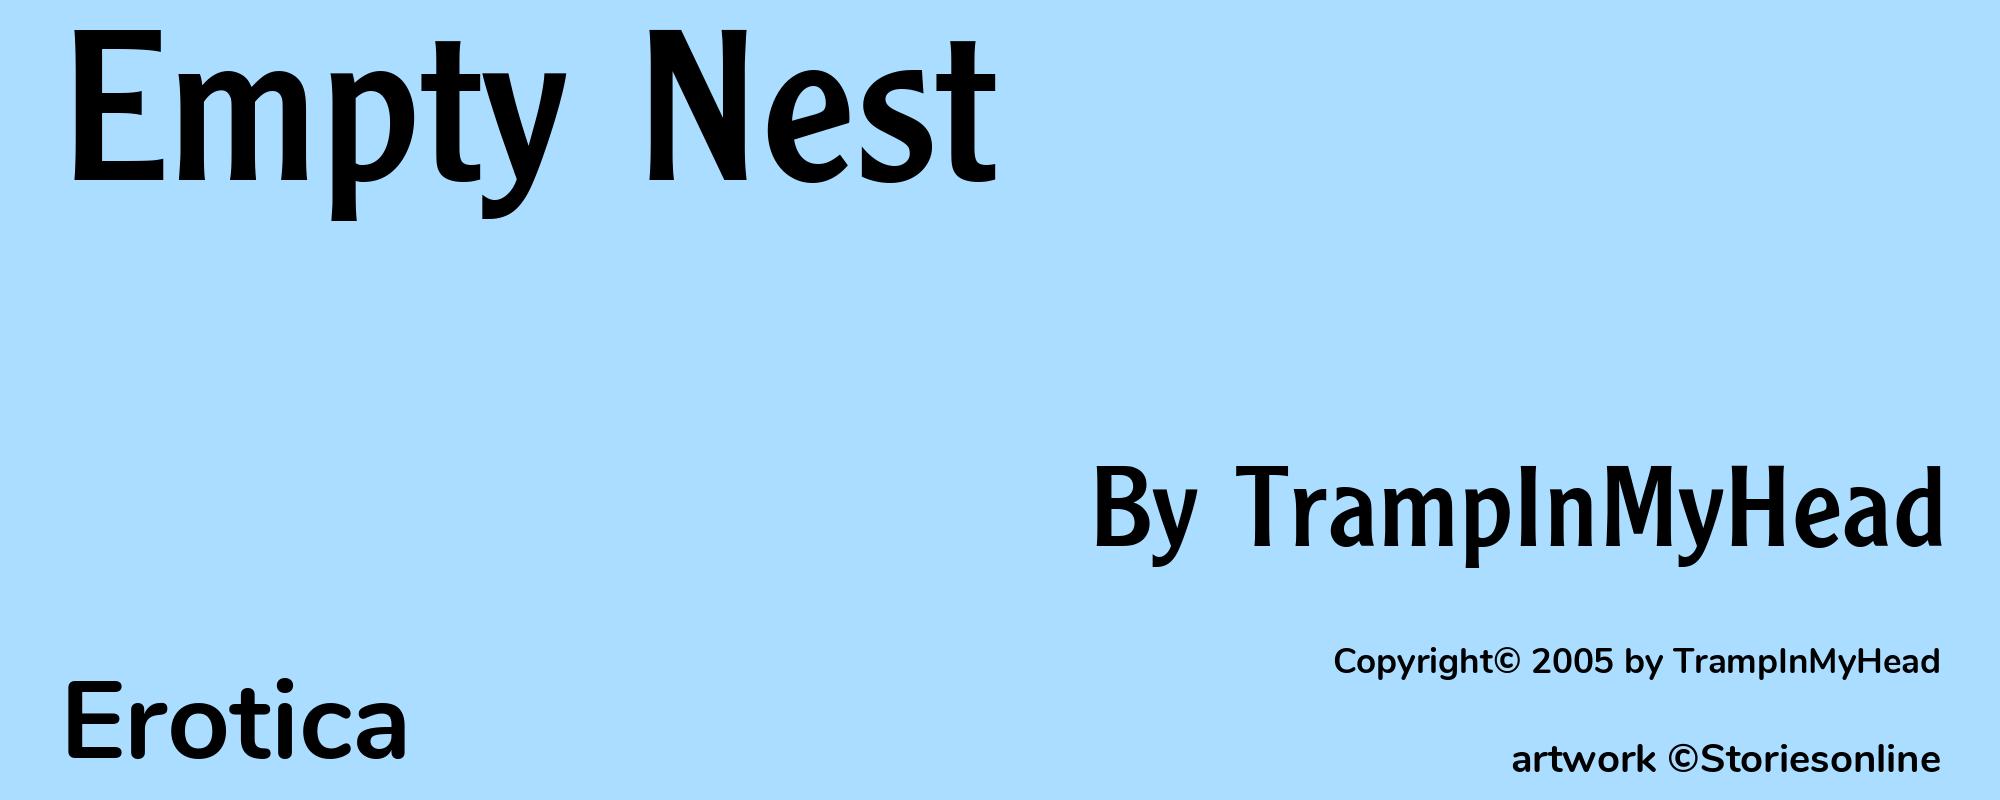 Empty Nest - Cover